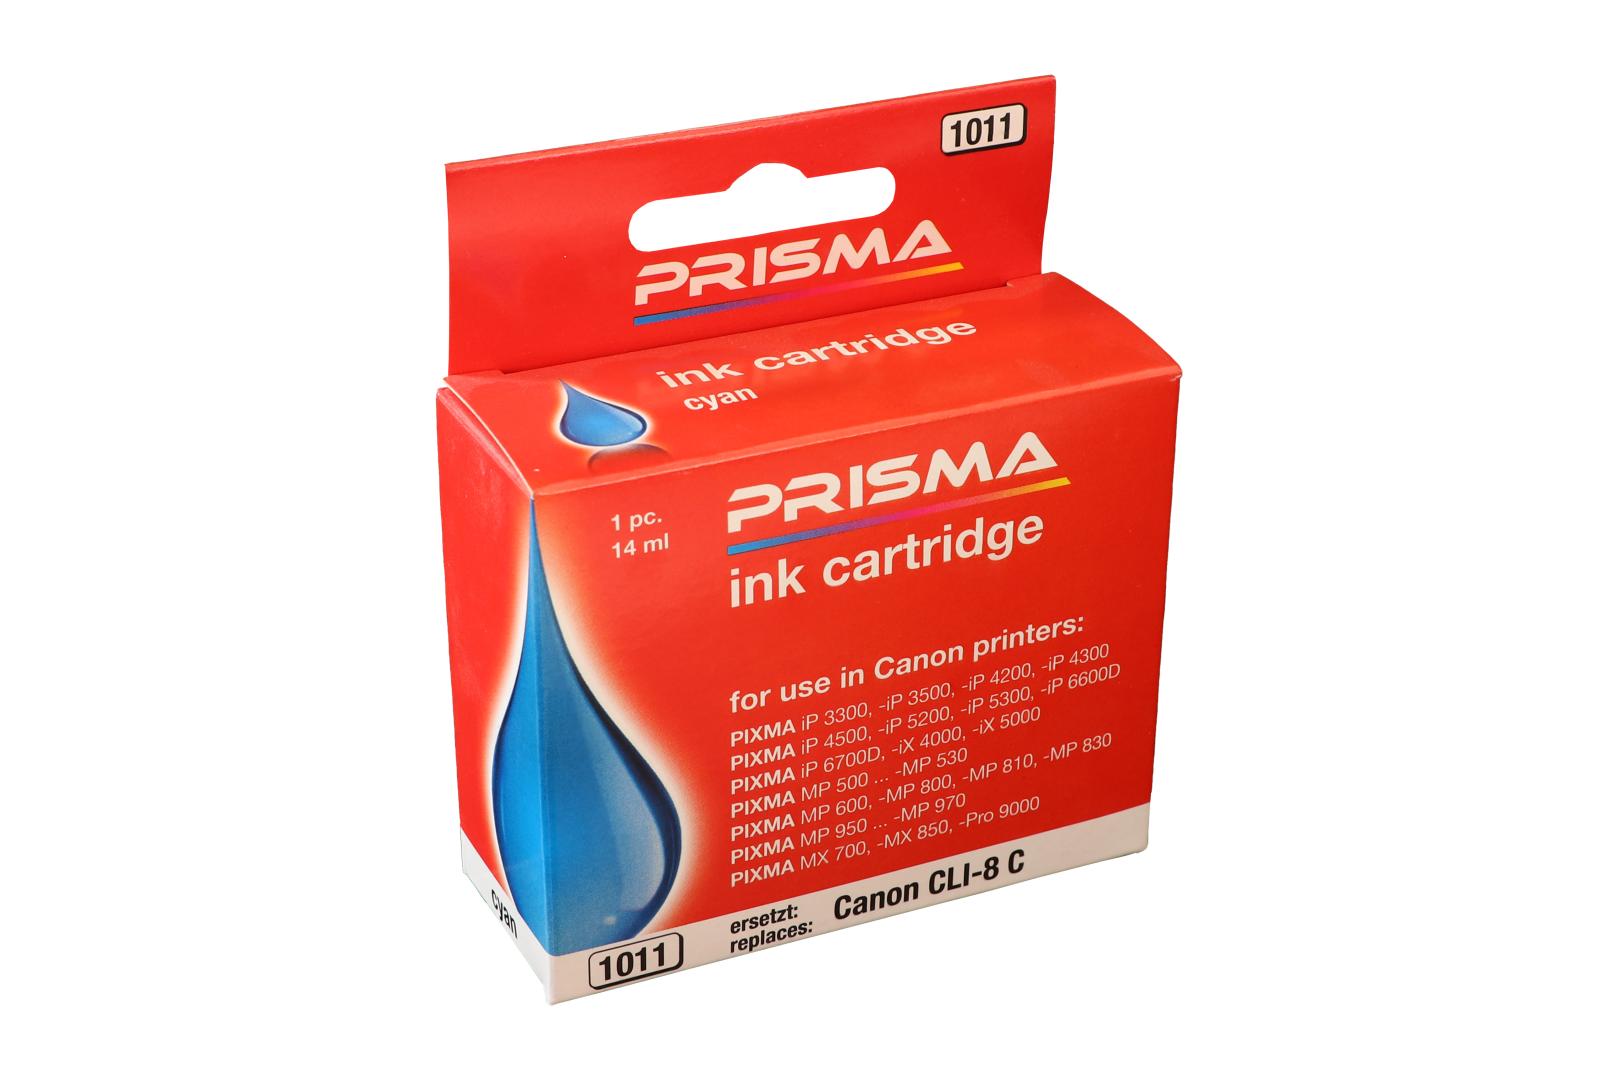 PRISMA 1011 Druckerpatrone für Canon Tintenstrahldrucker, cyan, 14 ml